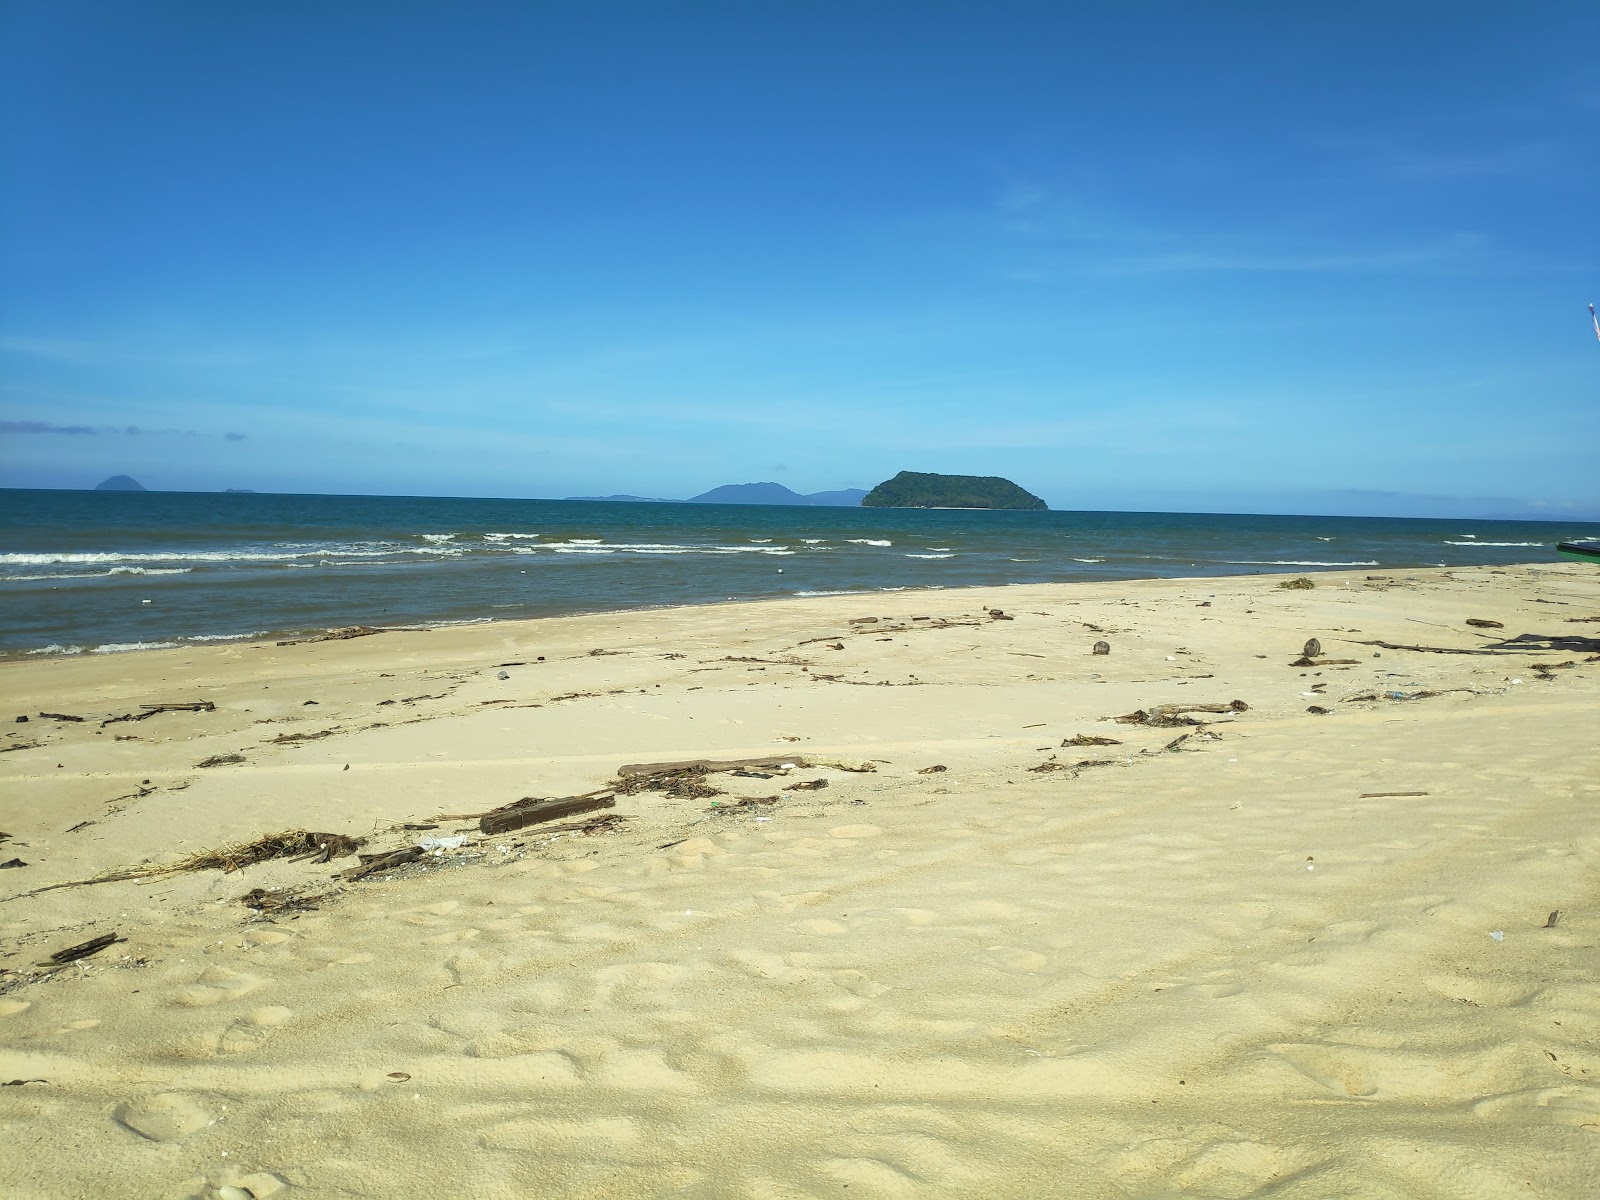 Valokuva Air Tawar Beachista. pinnalla kirkas hiekka:n kanssa